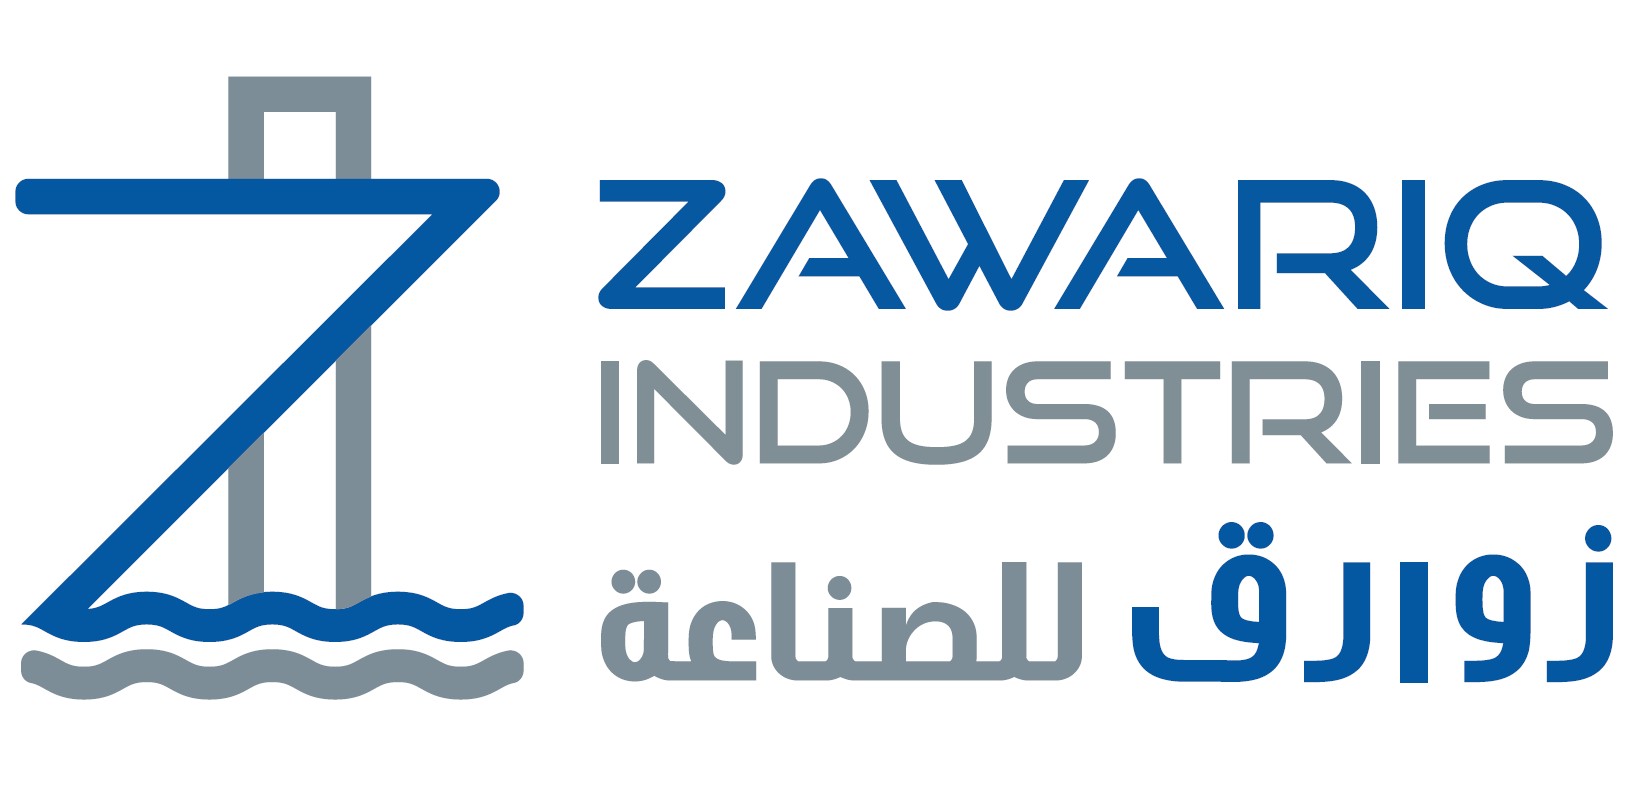 Zawariq Industries